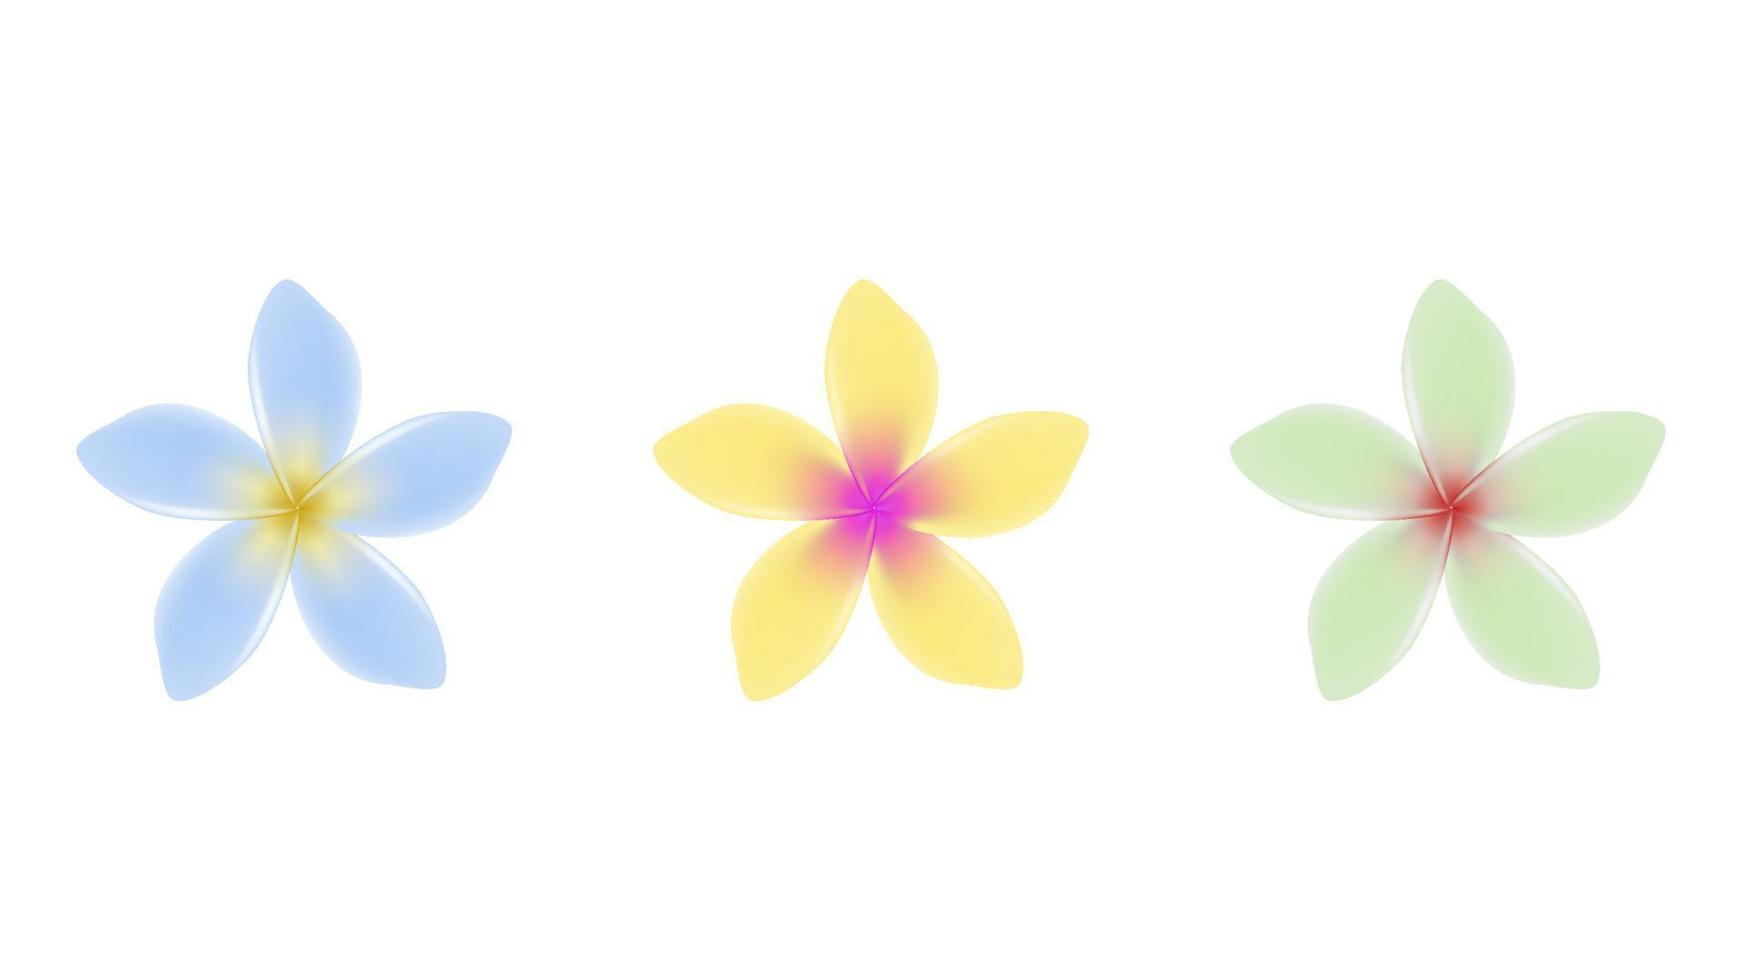 objetos de vetor de flor de jasmim em várias cores.